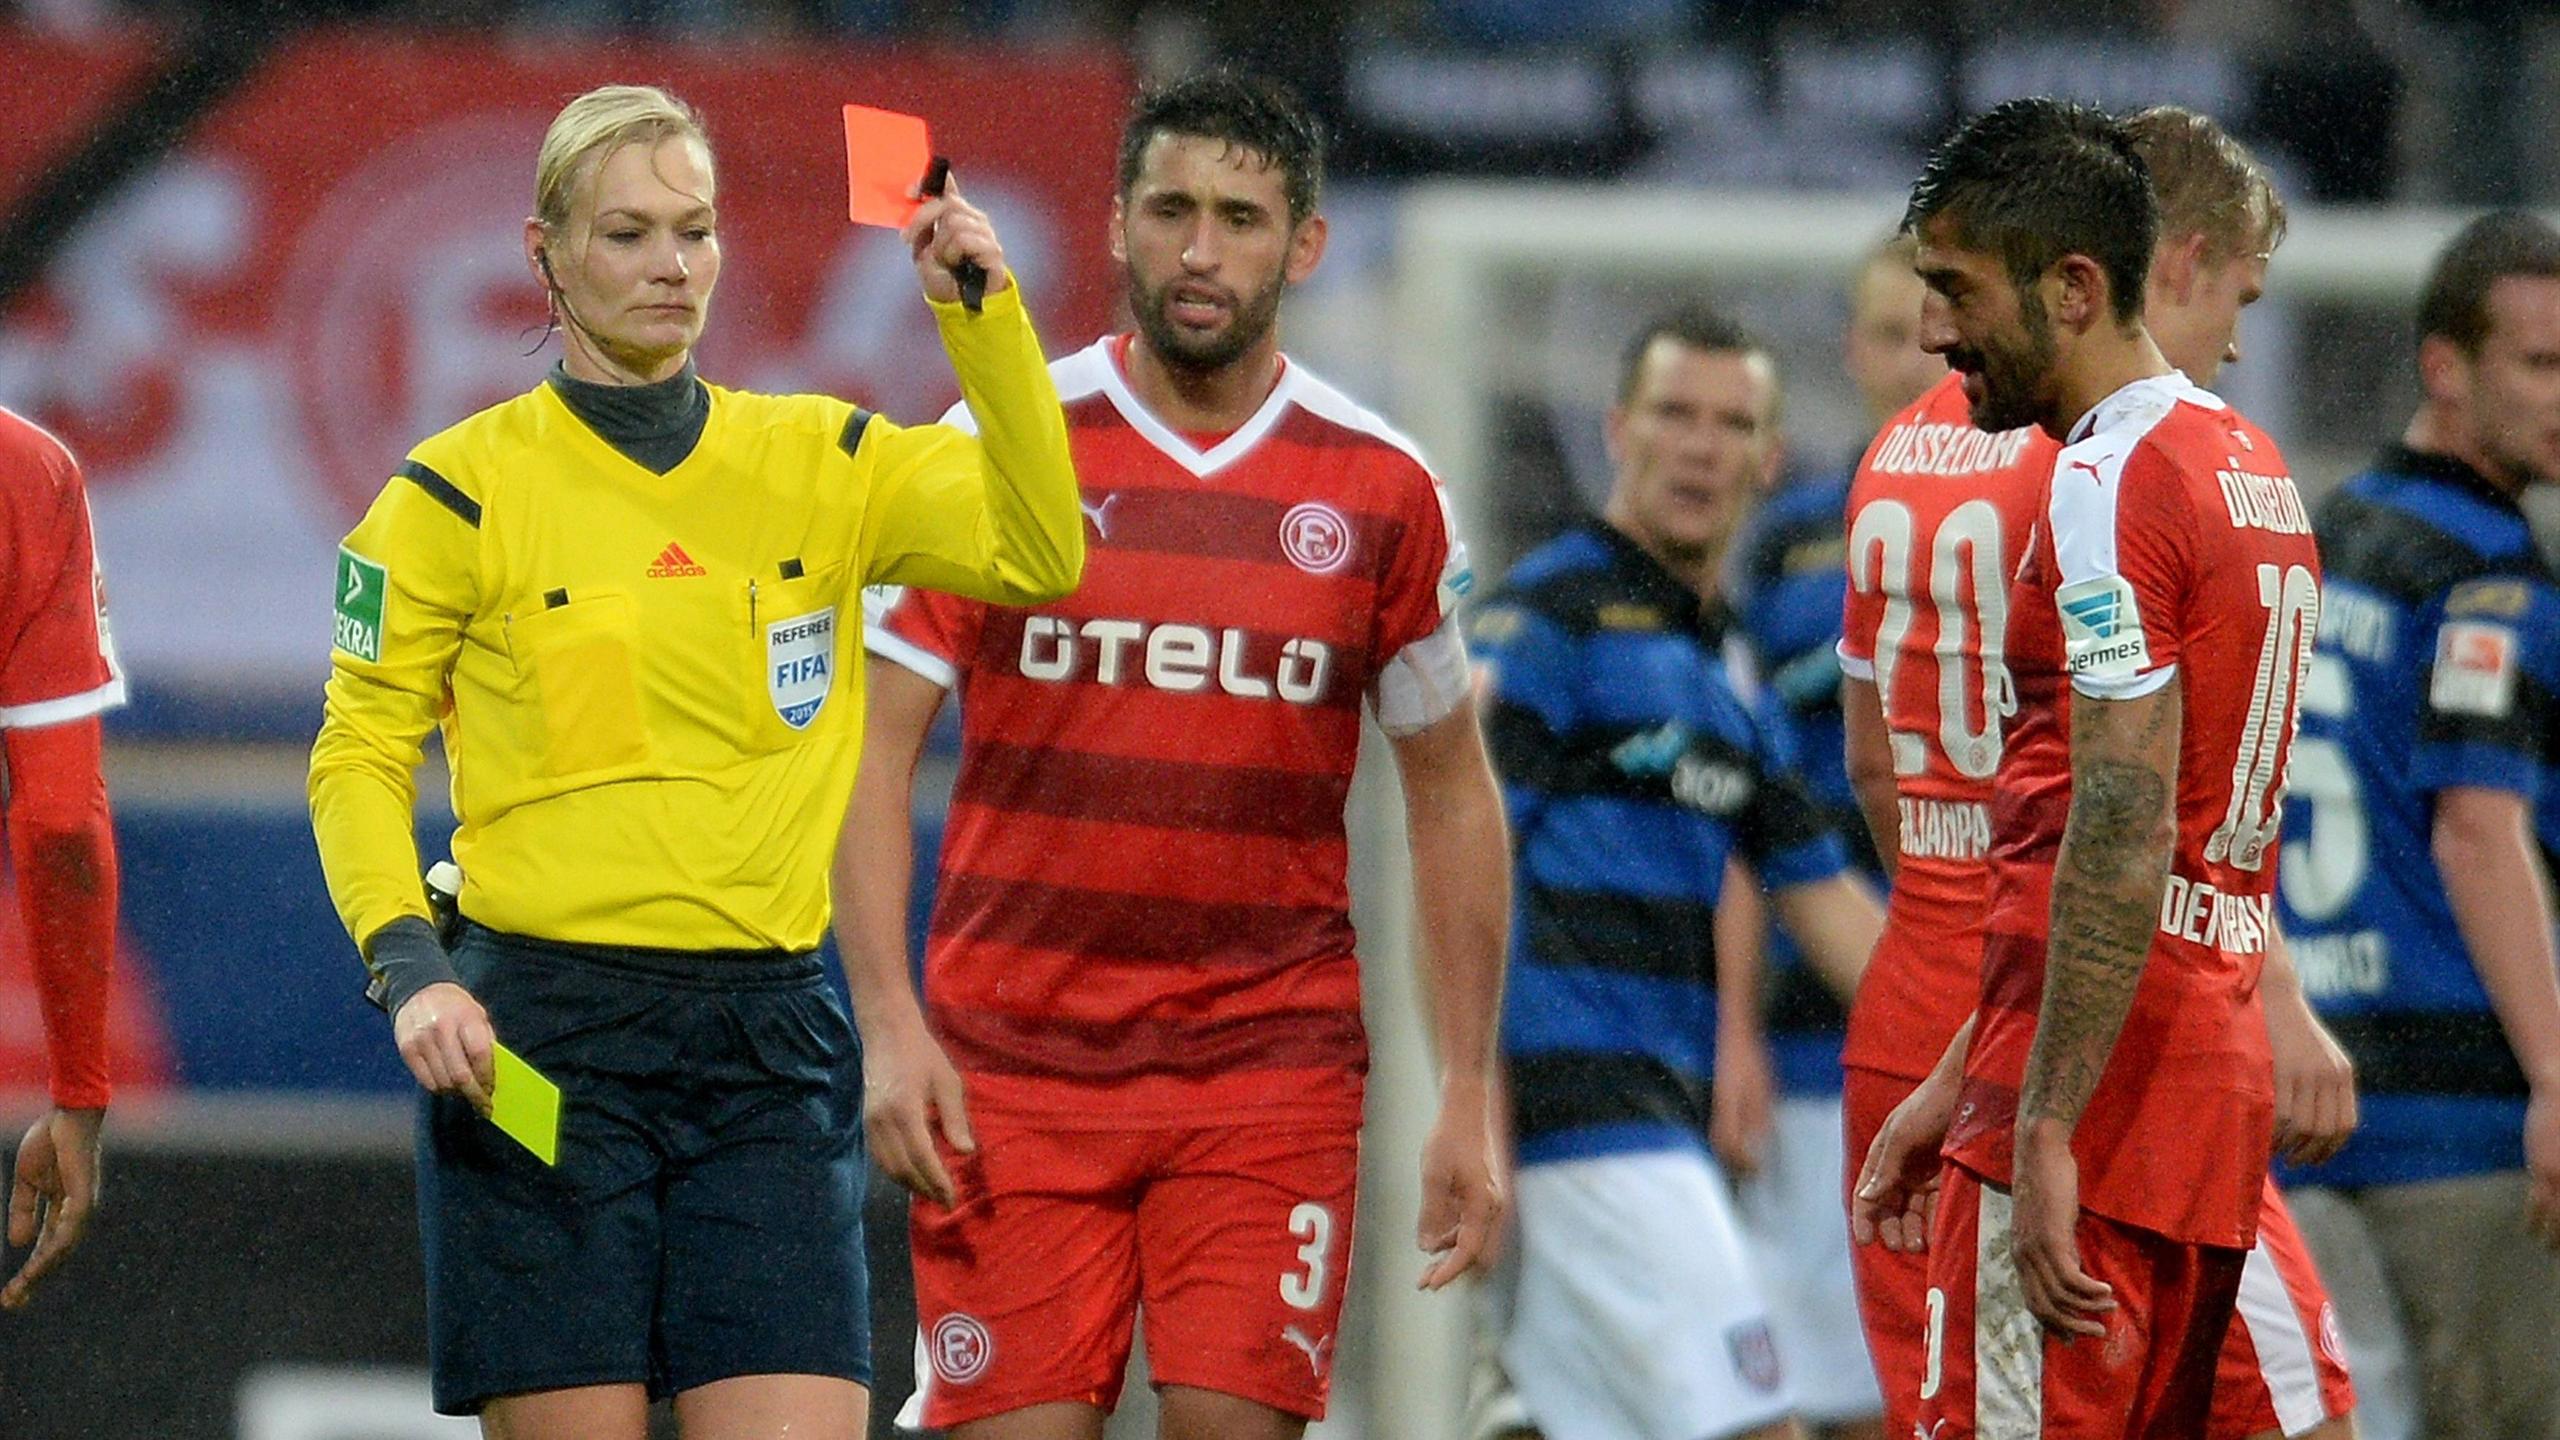 Немецкий футболист Керем Демирбай предвзято судил женский матч из-за сексистских предрассудков